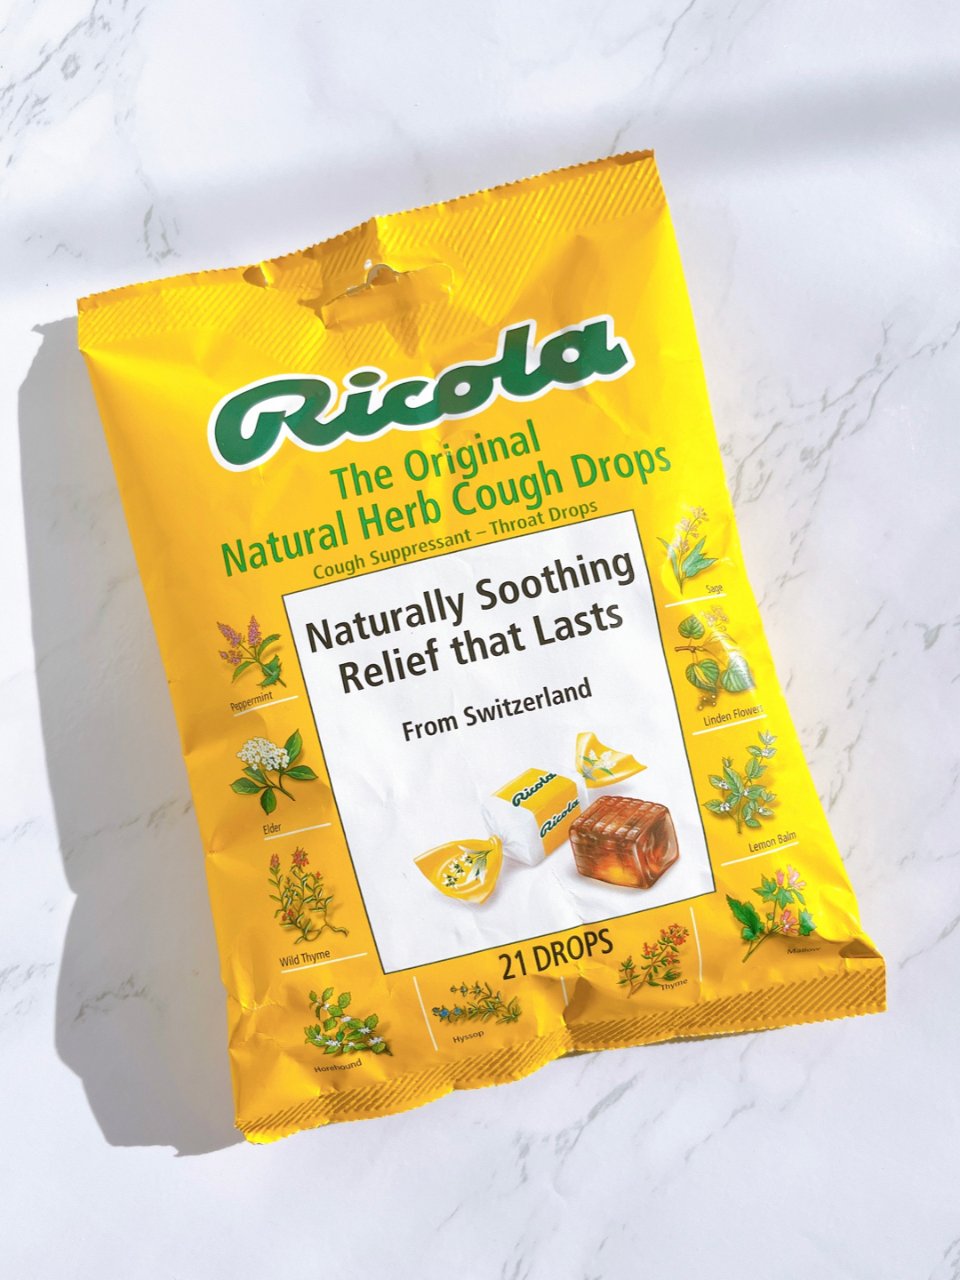 Ricola 利口乐,Ricola Cough Drops - Natural Herb - 50ct : Target